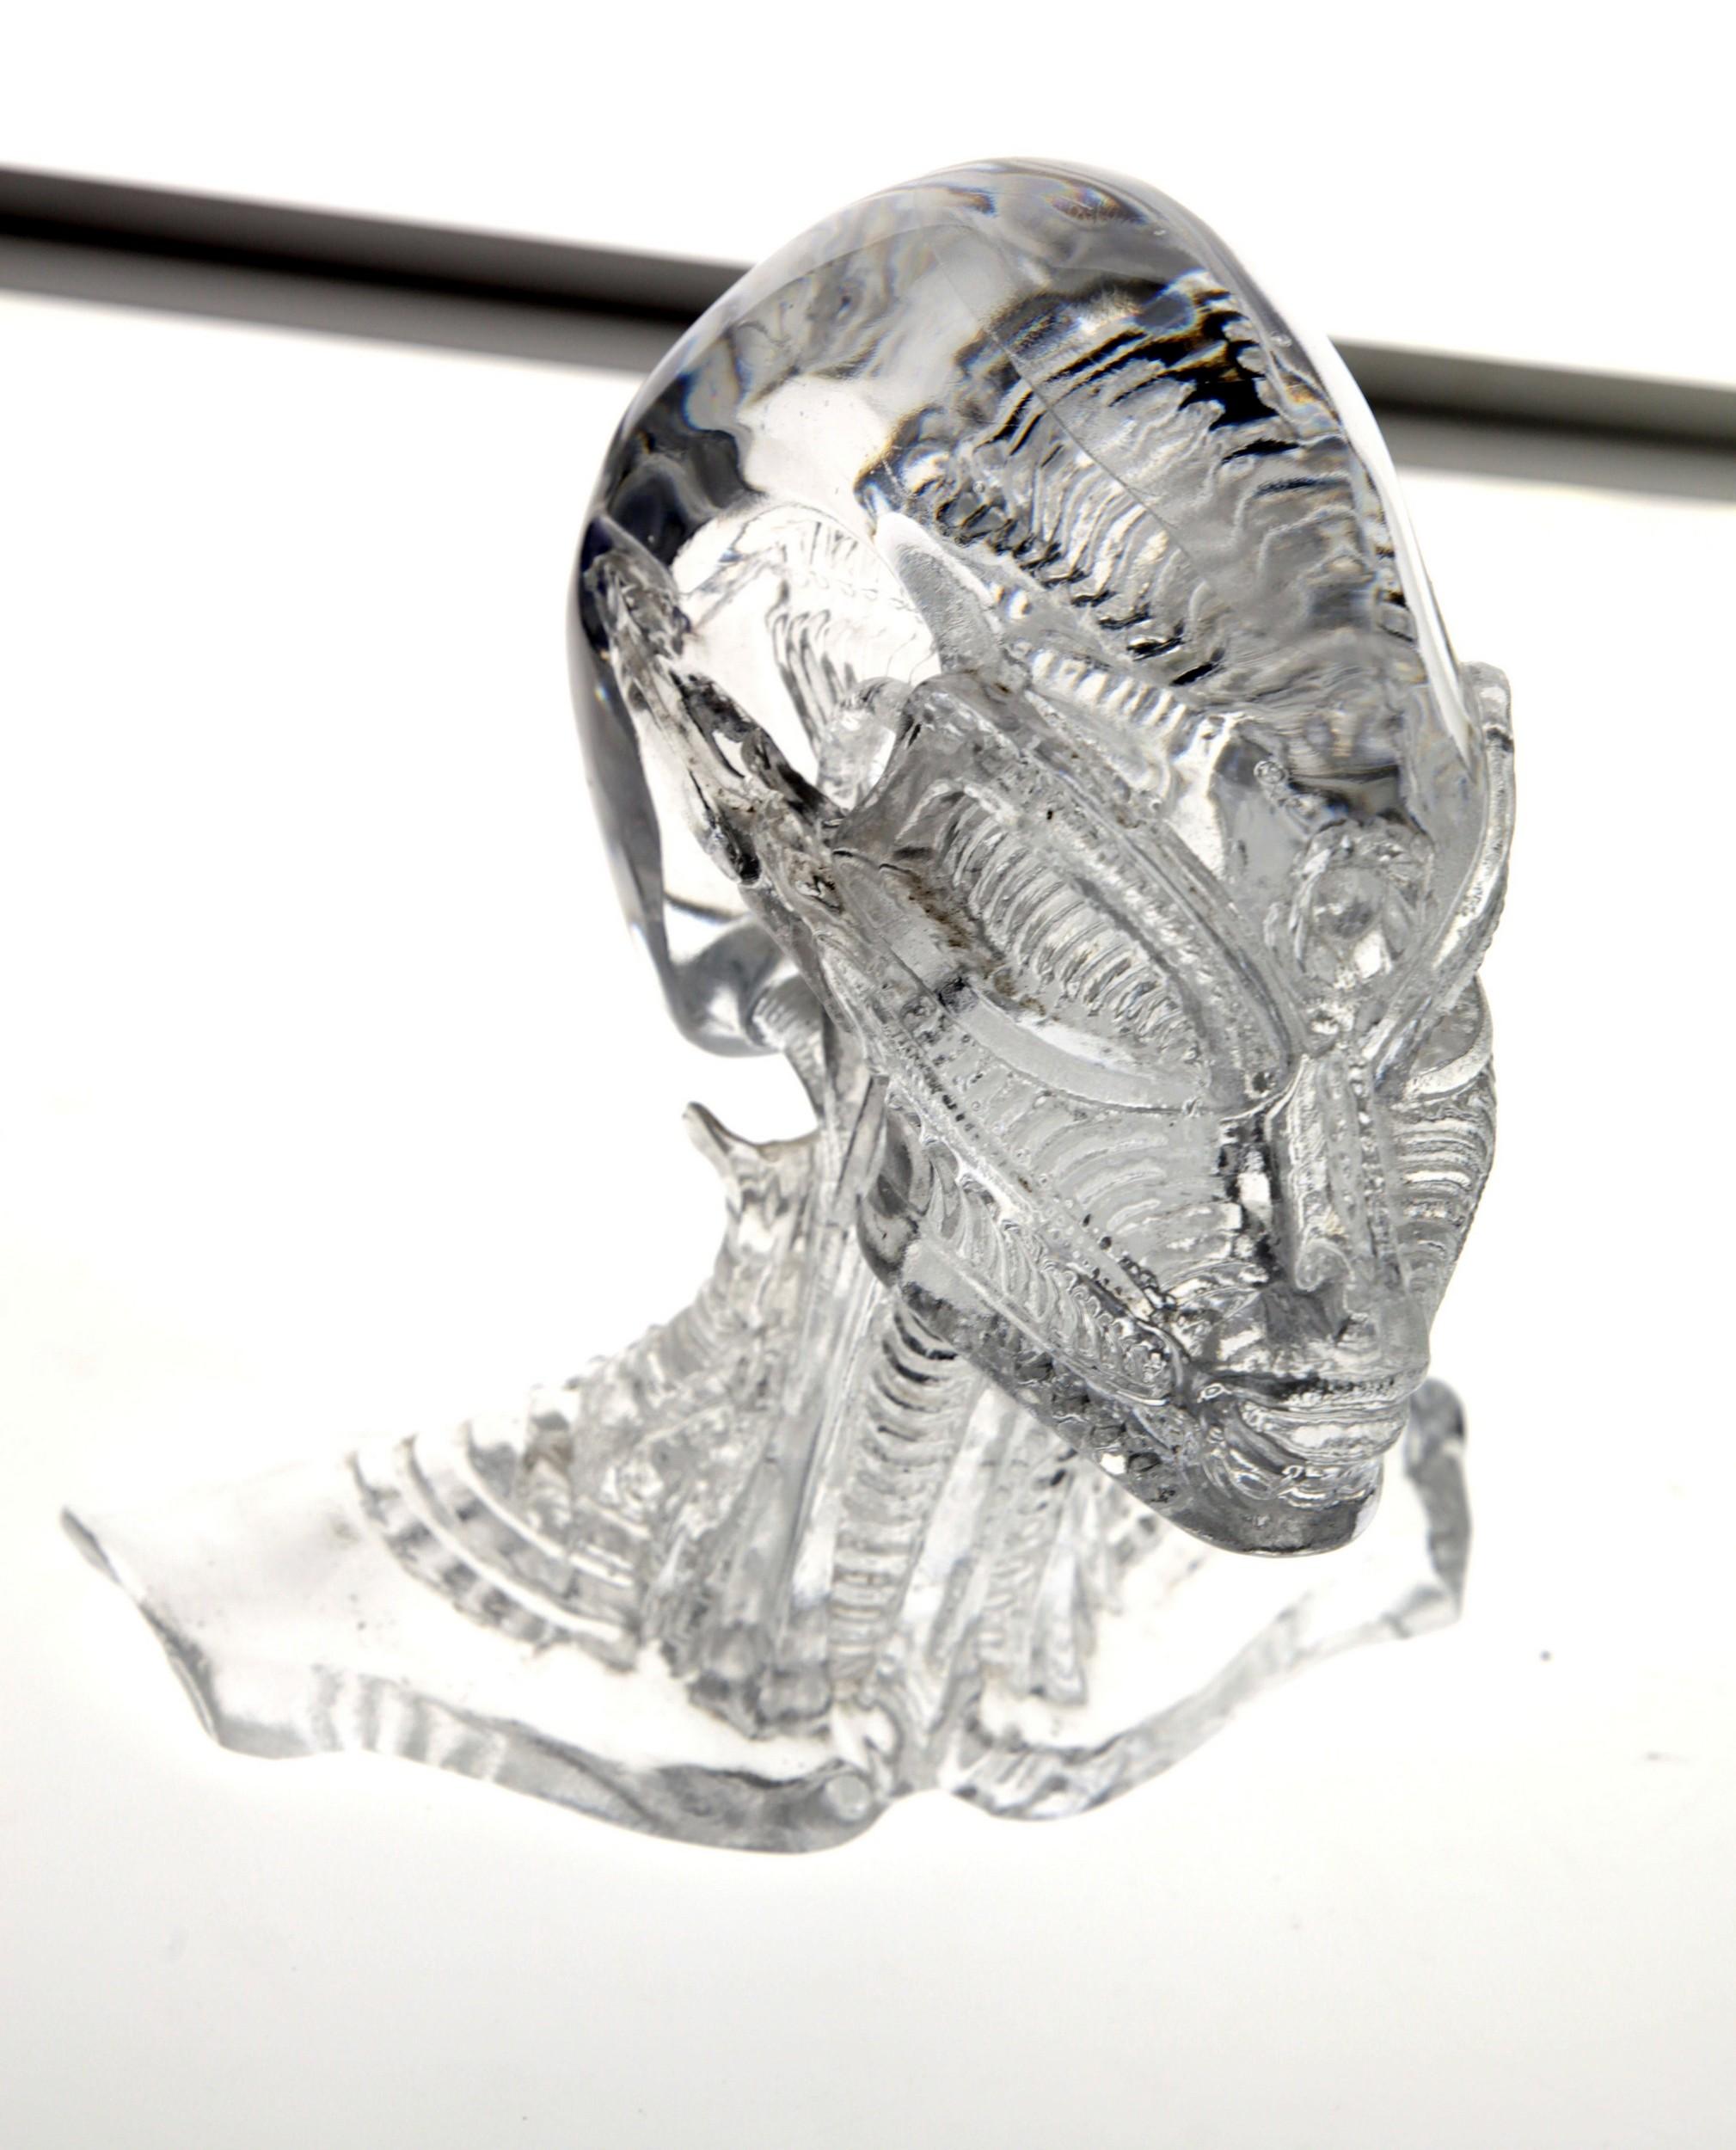 Contemporary Giuman, Memento Mori Trittico Evolution, Murano Glass Lost Wax Cast, 2010